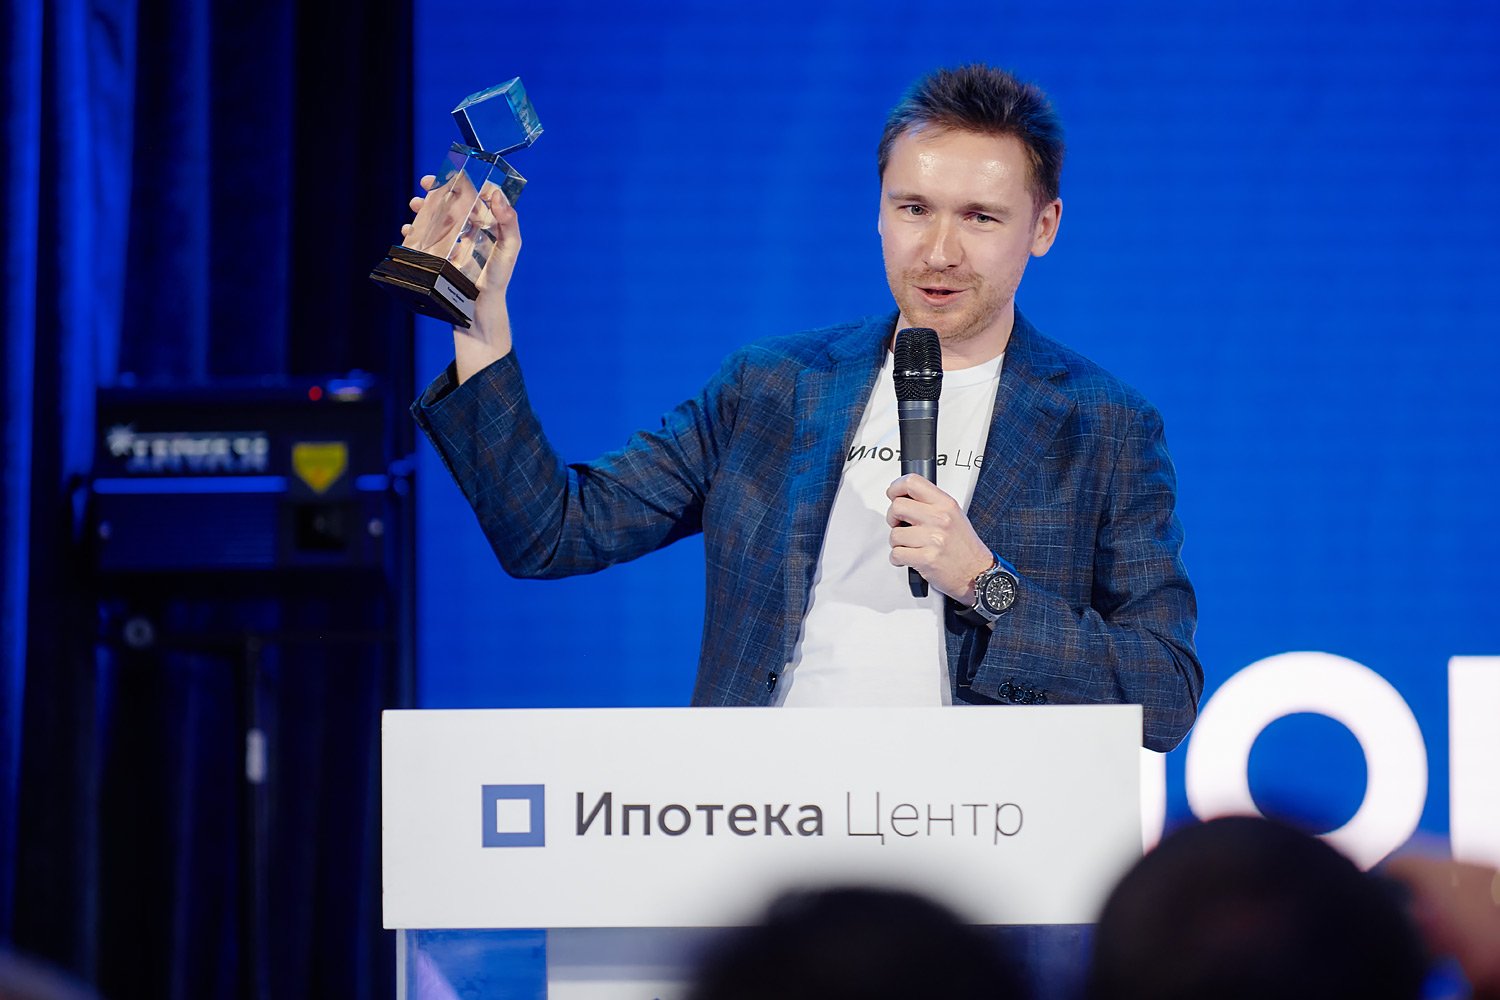 В Москве прошла церемония награждения лучших ипотечных экспертов России